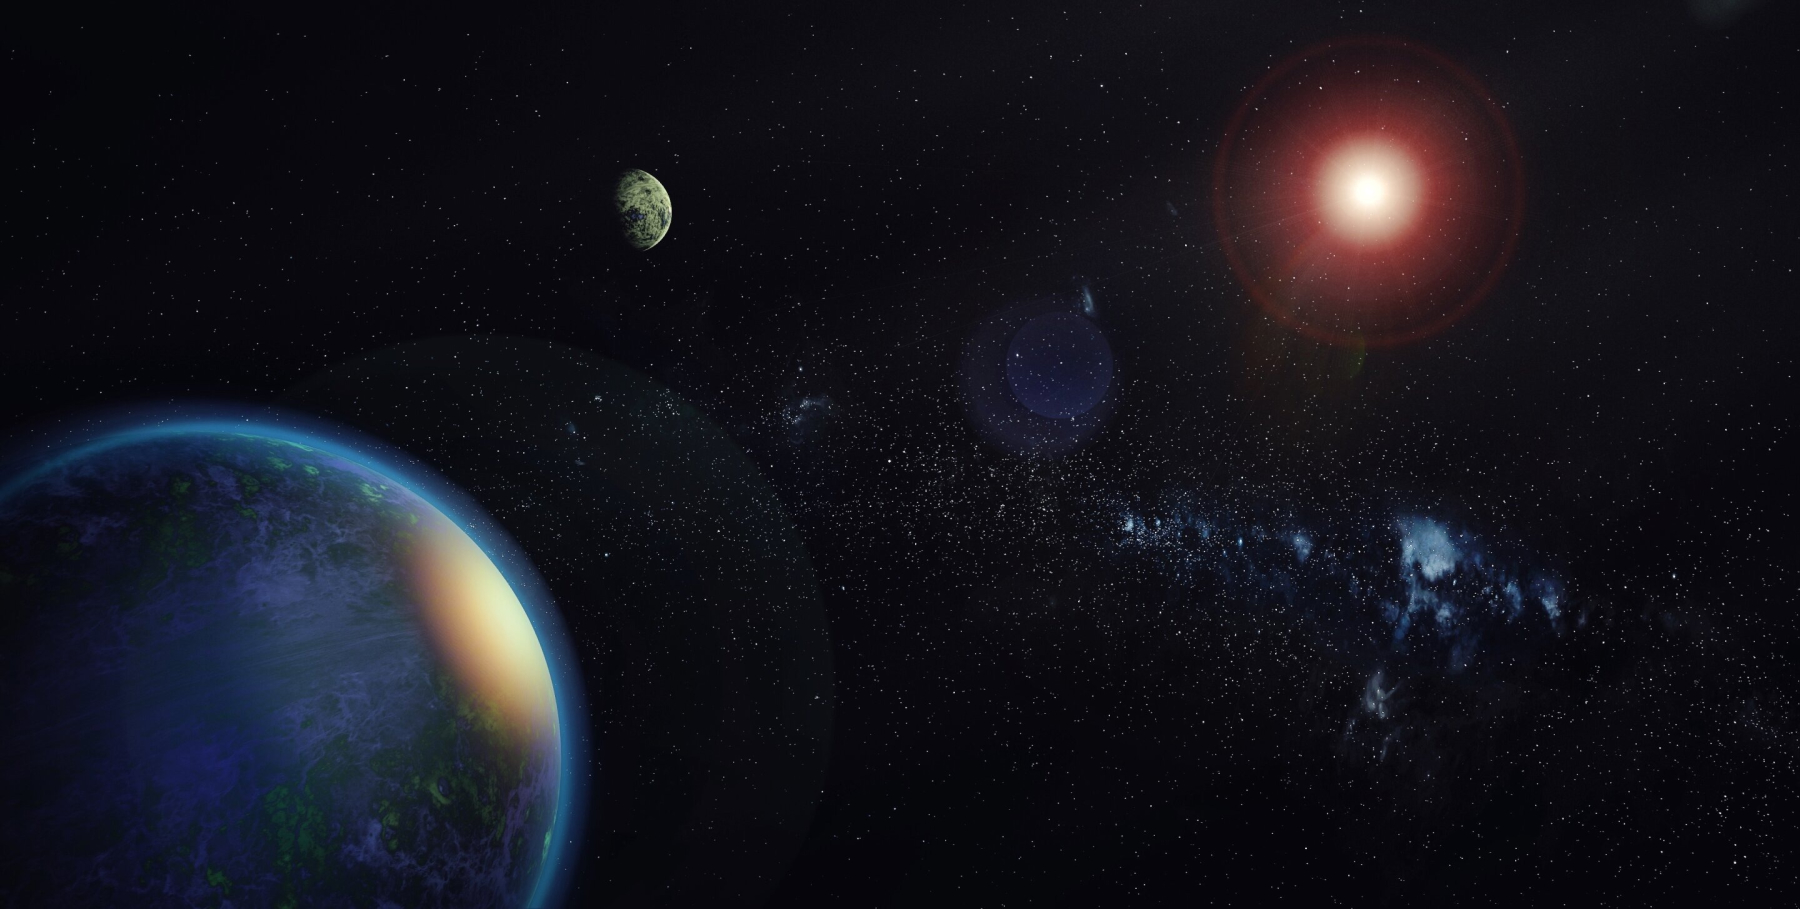 Umjetnički prikaz dvaju planeta mase slične Zemljinoj koja kruže oko zvijezde GJ 1002 (©Alejandro Suárez Mascareño i Inés Bonet (IAC)).